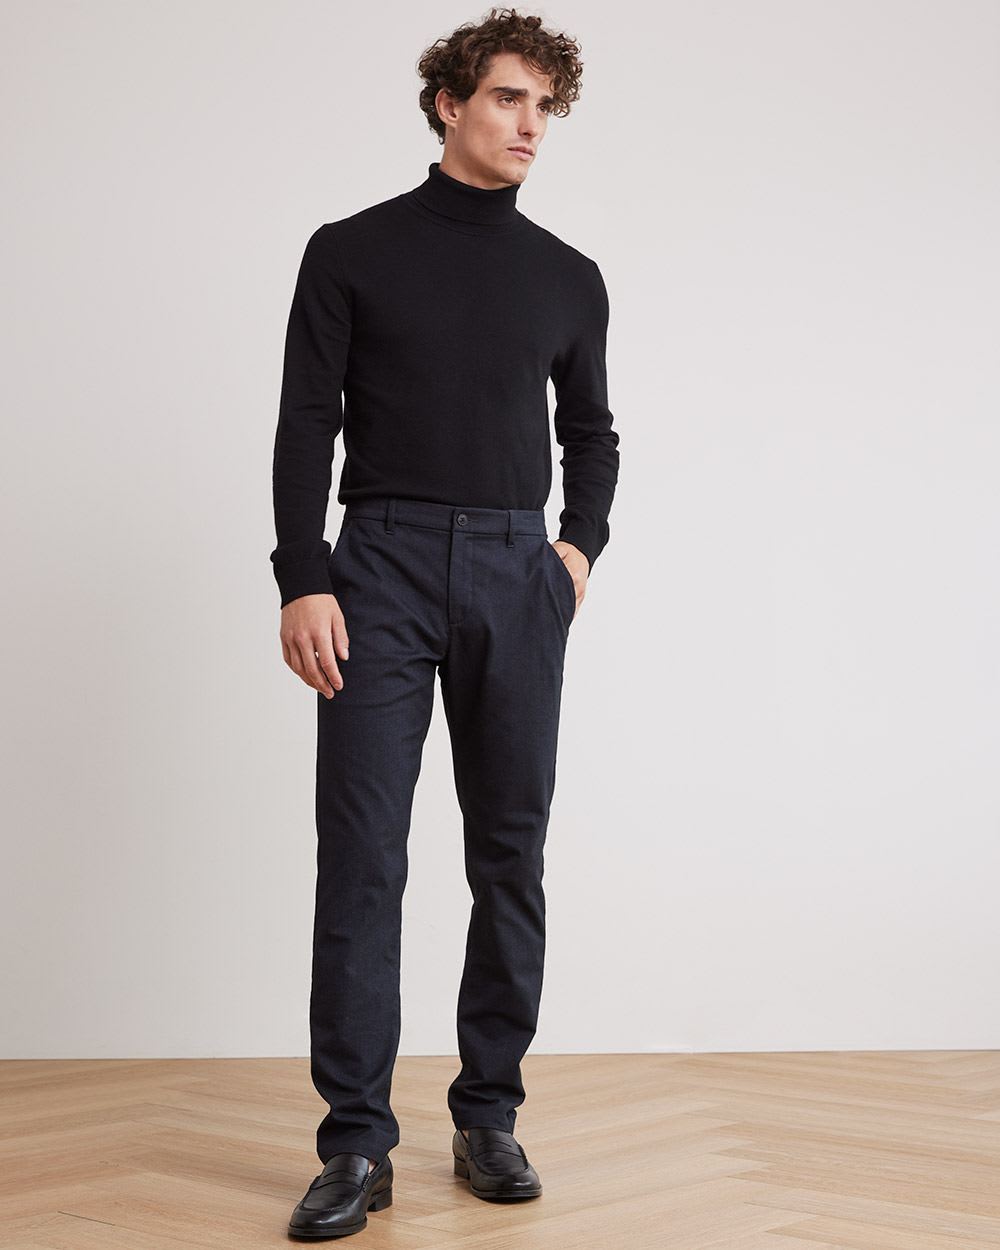 Basic Long-Sleeve Turtleneck Sweater | RW&CO.